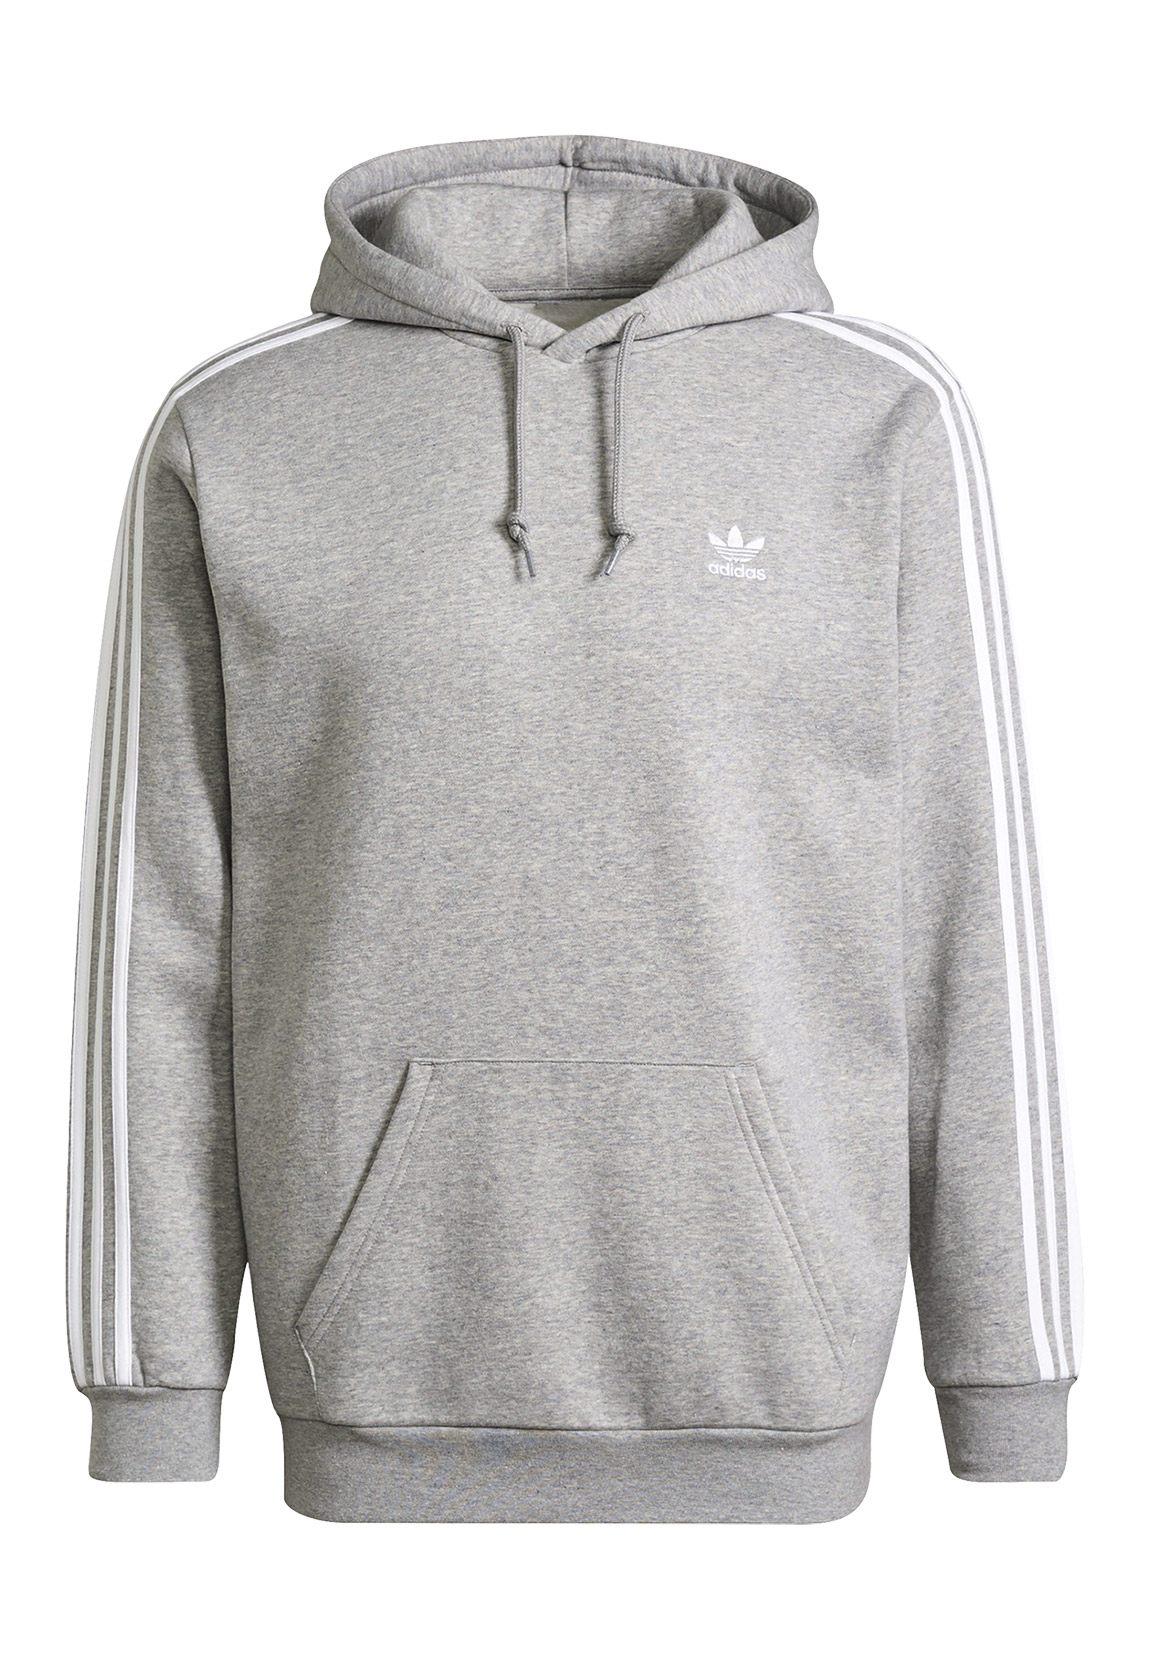 Adidas Originals 3 Stripes Kapuzenpullover 2XL Medium Grey Heather günstig online kaufen